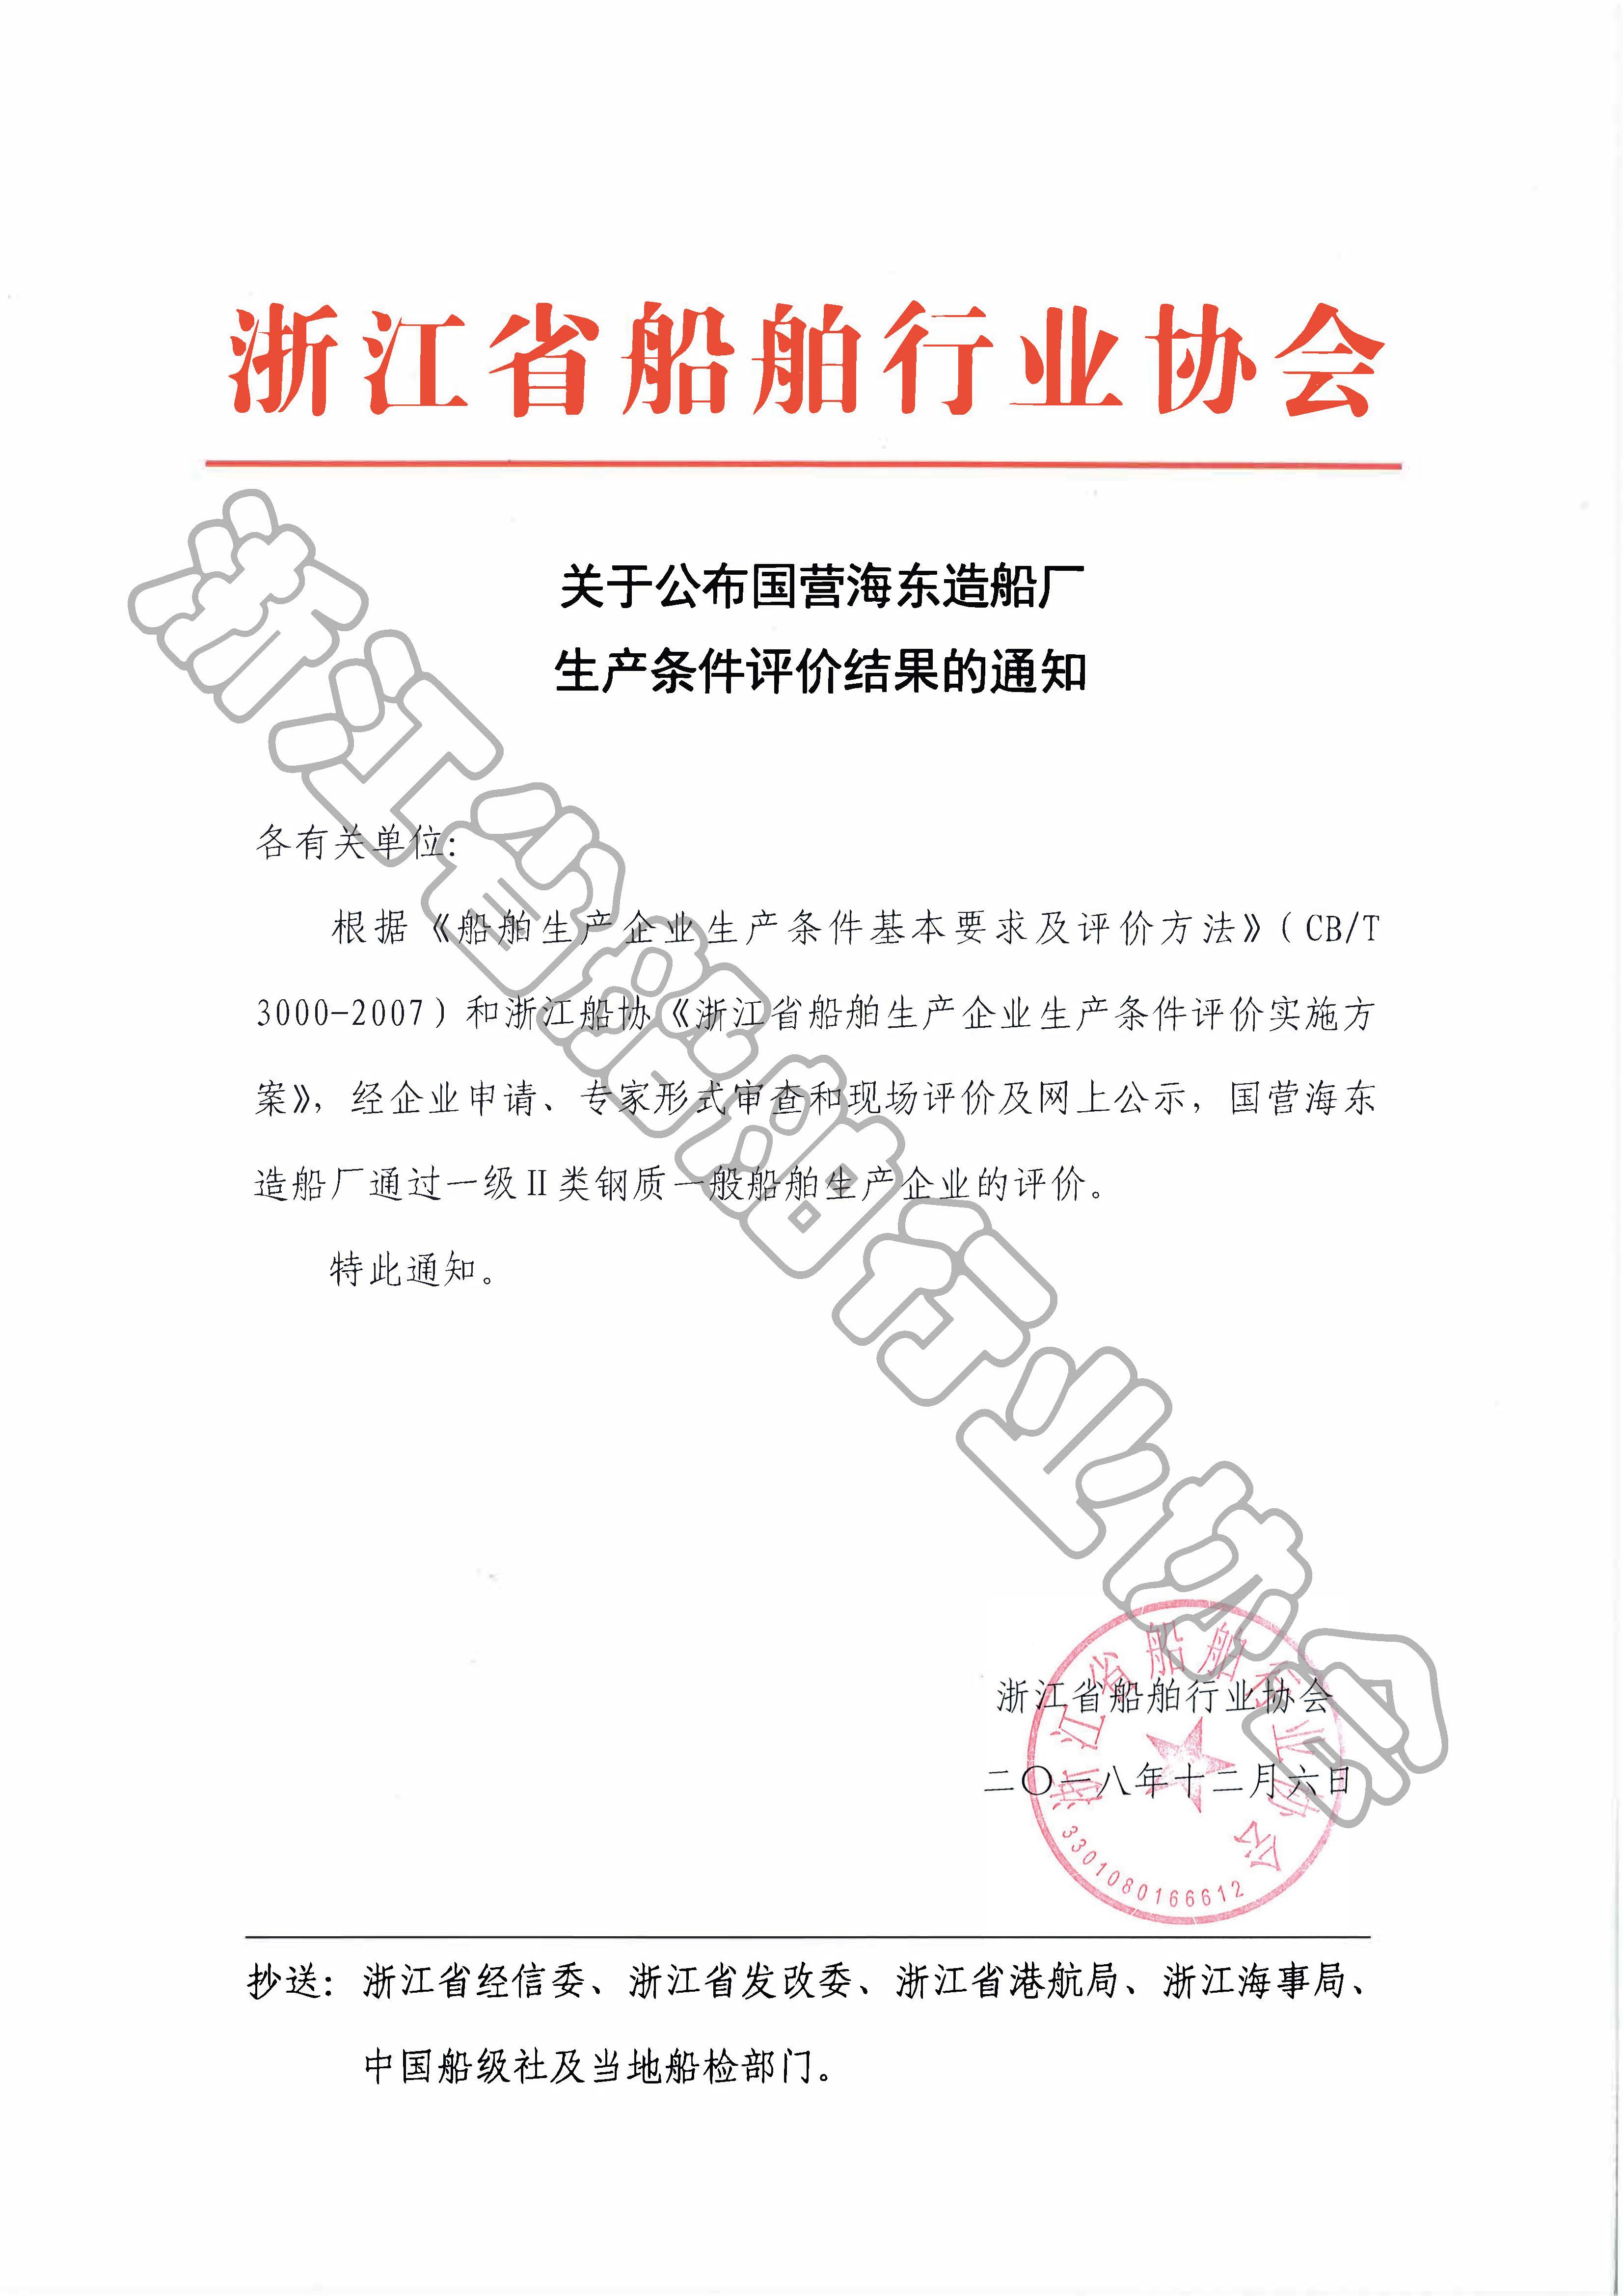 关于公布国营海东造船厂生产条件评价结果的通知.jpg